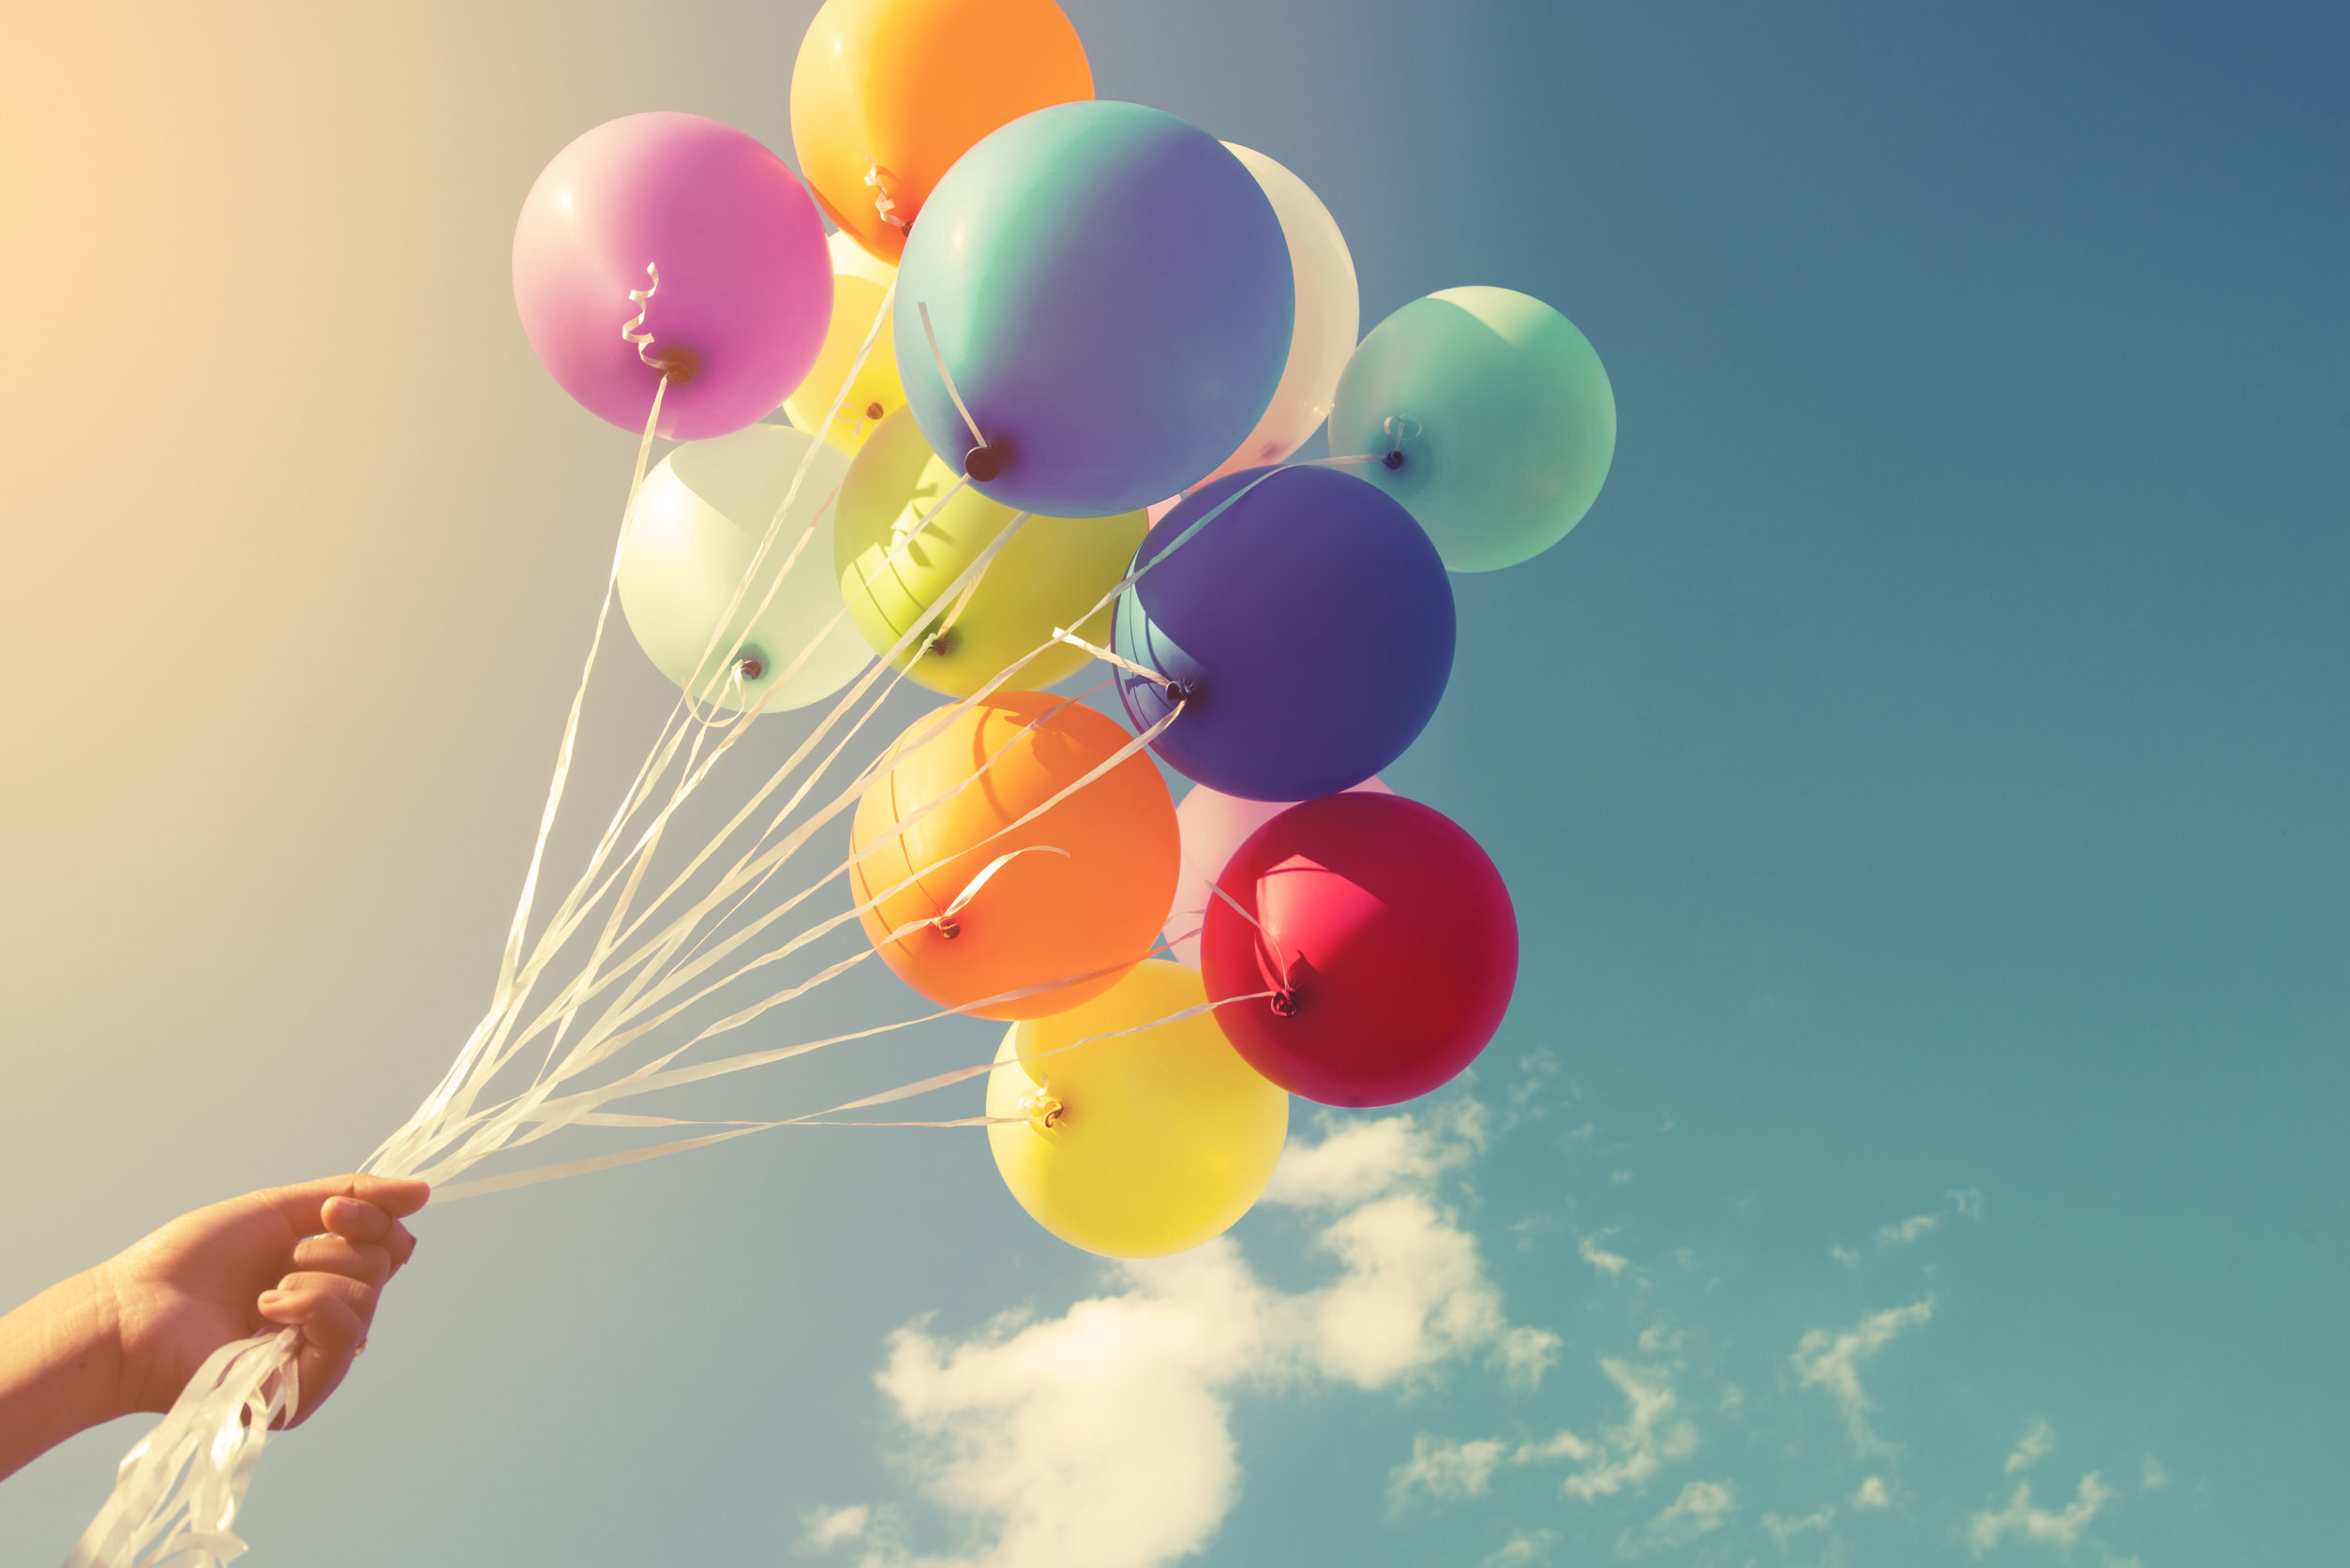 День рождения воздуха. Воздушный шарик. Шары воздушные в воздухе. Шарики в небе. Воздушные шары в руке.